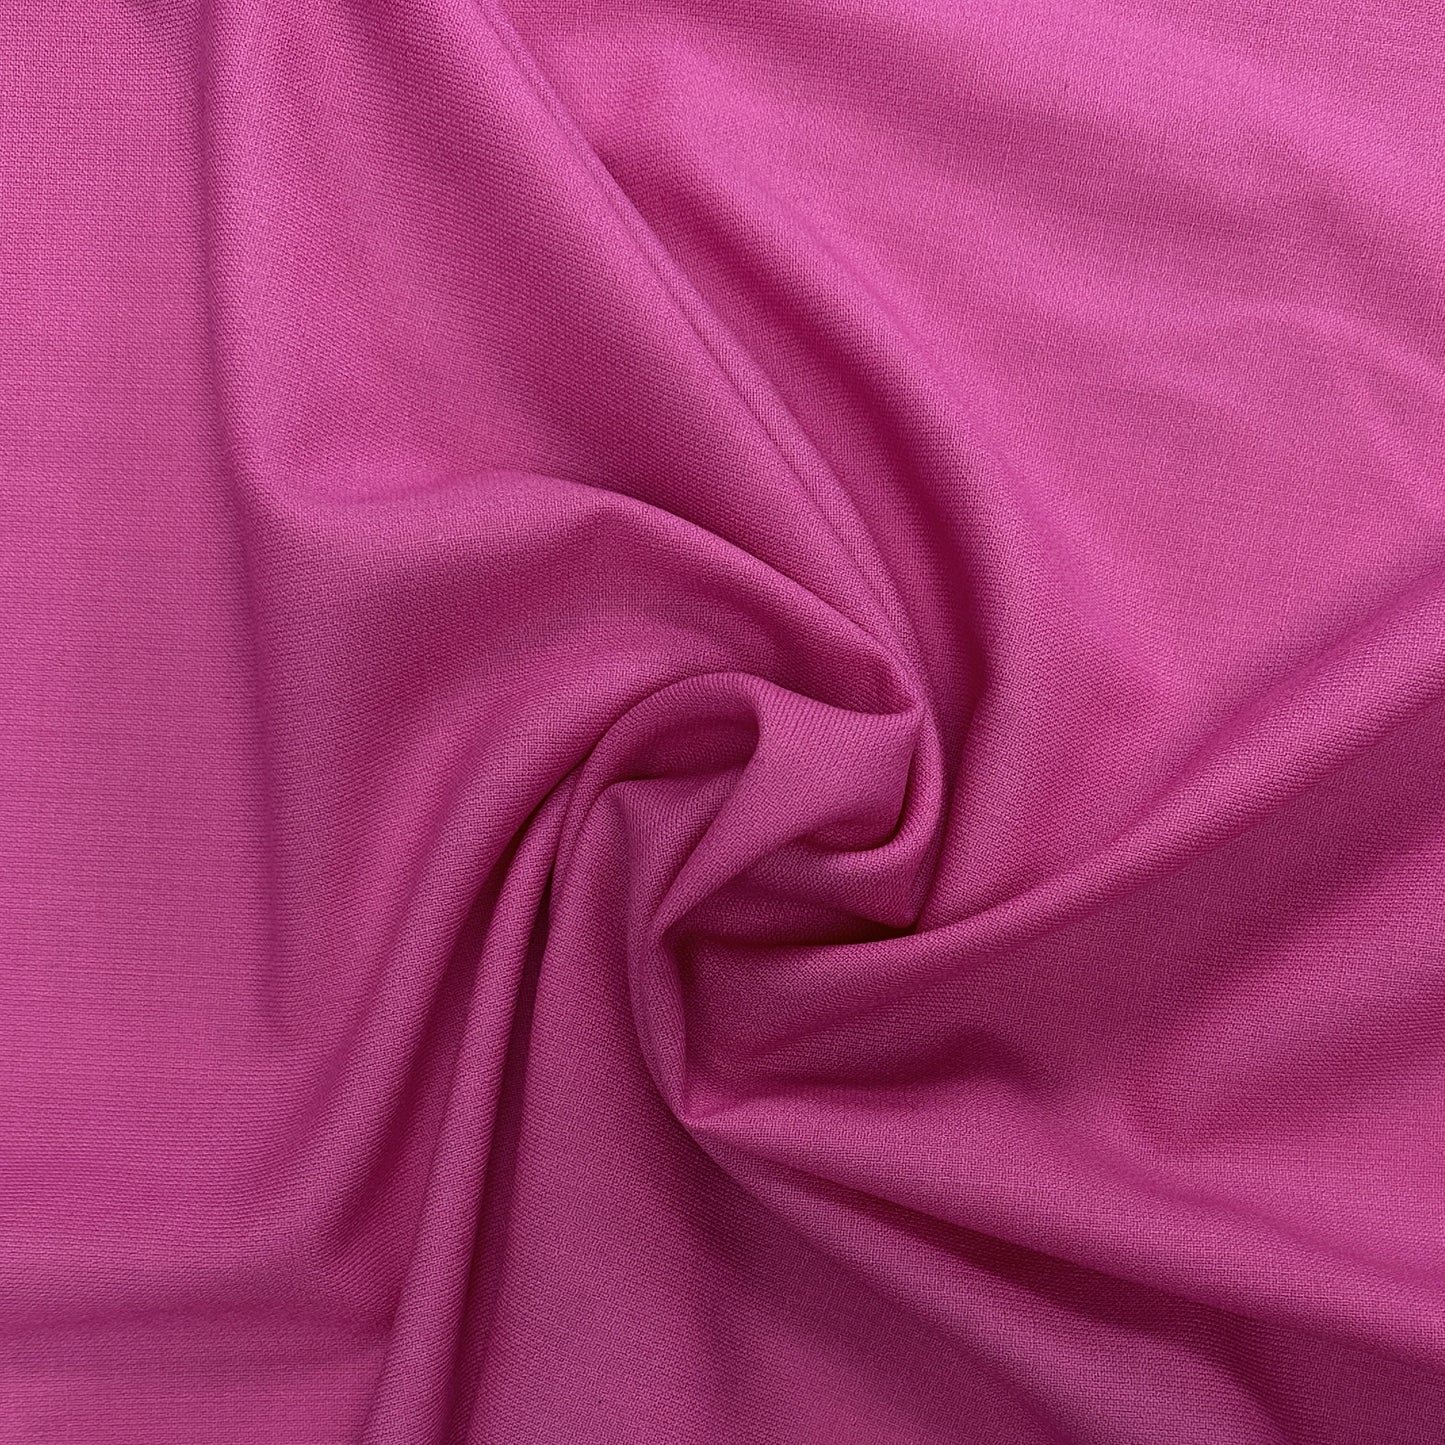 Pink Wool Crepe - Deadstock